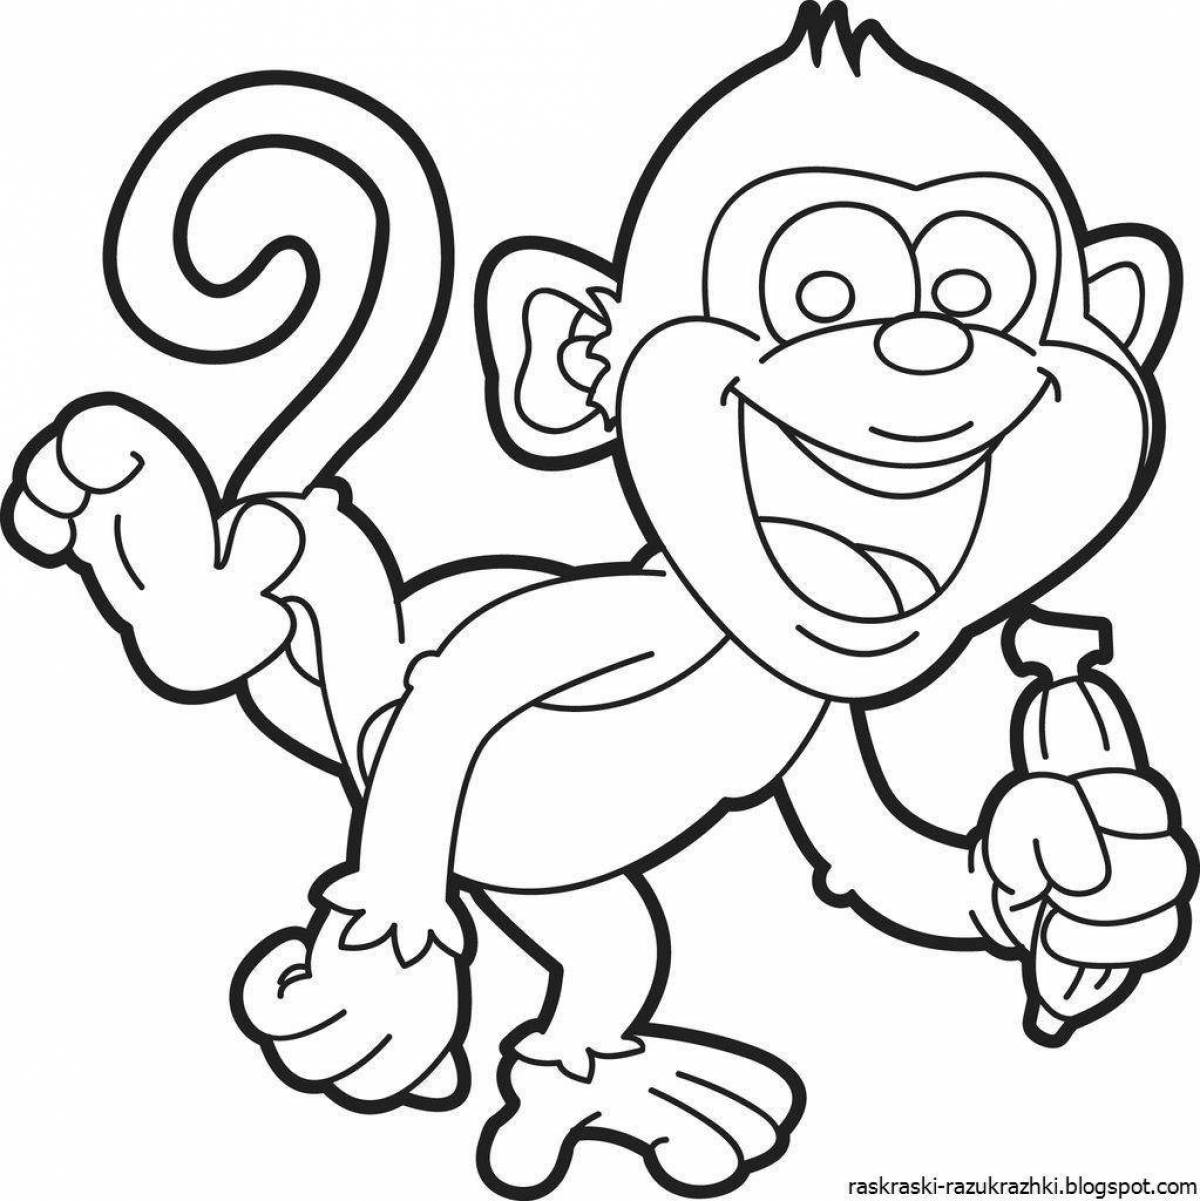 Забавная раскраска обезьяна